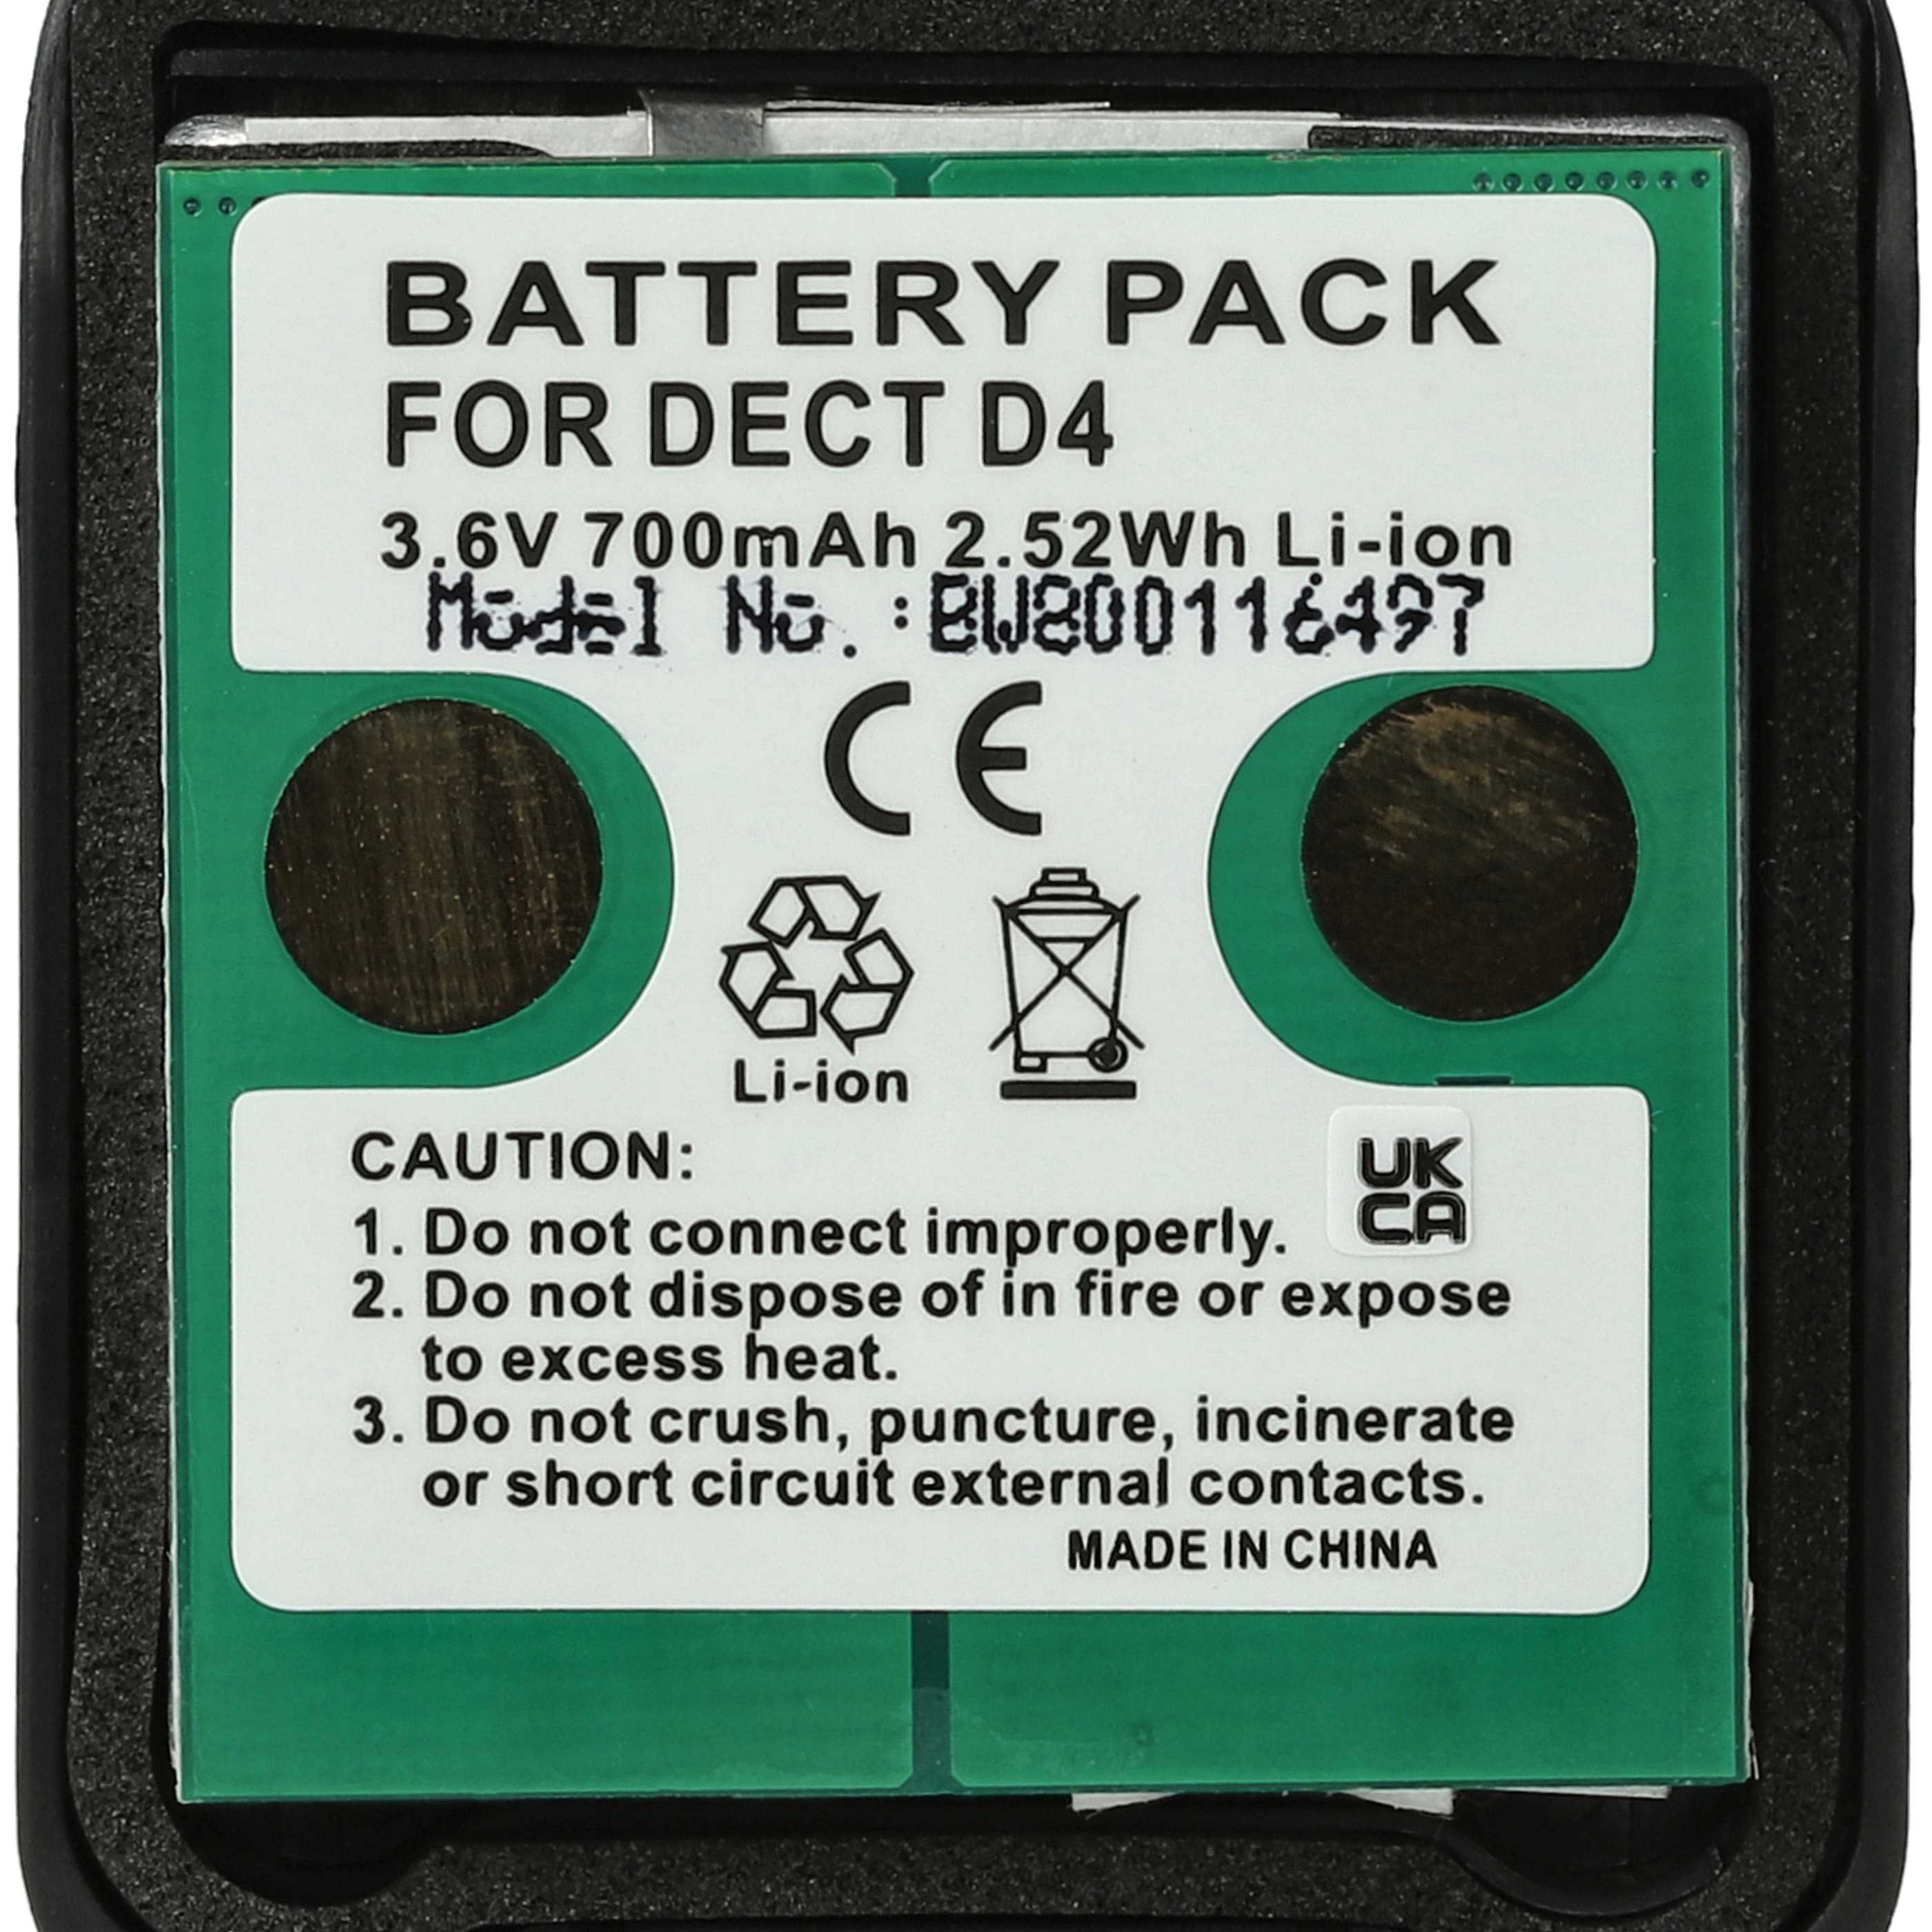 Batterie remplace 5010808000, 5010808030 pour téléphone - 700mAh 3,7V Li-ion